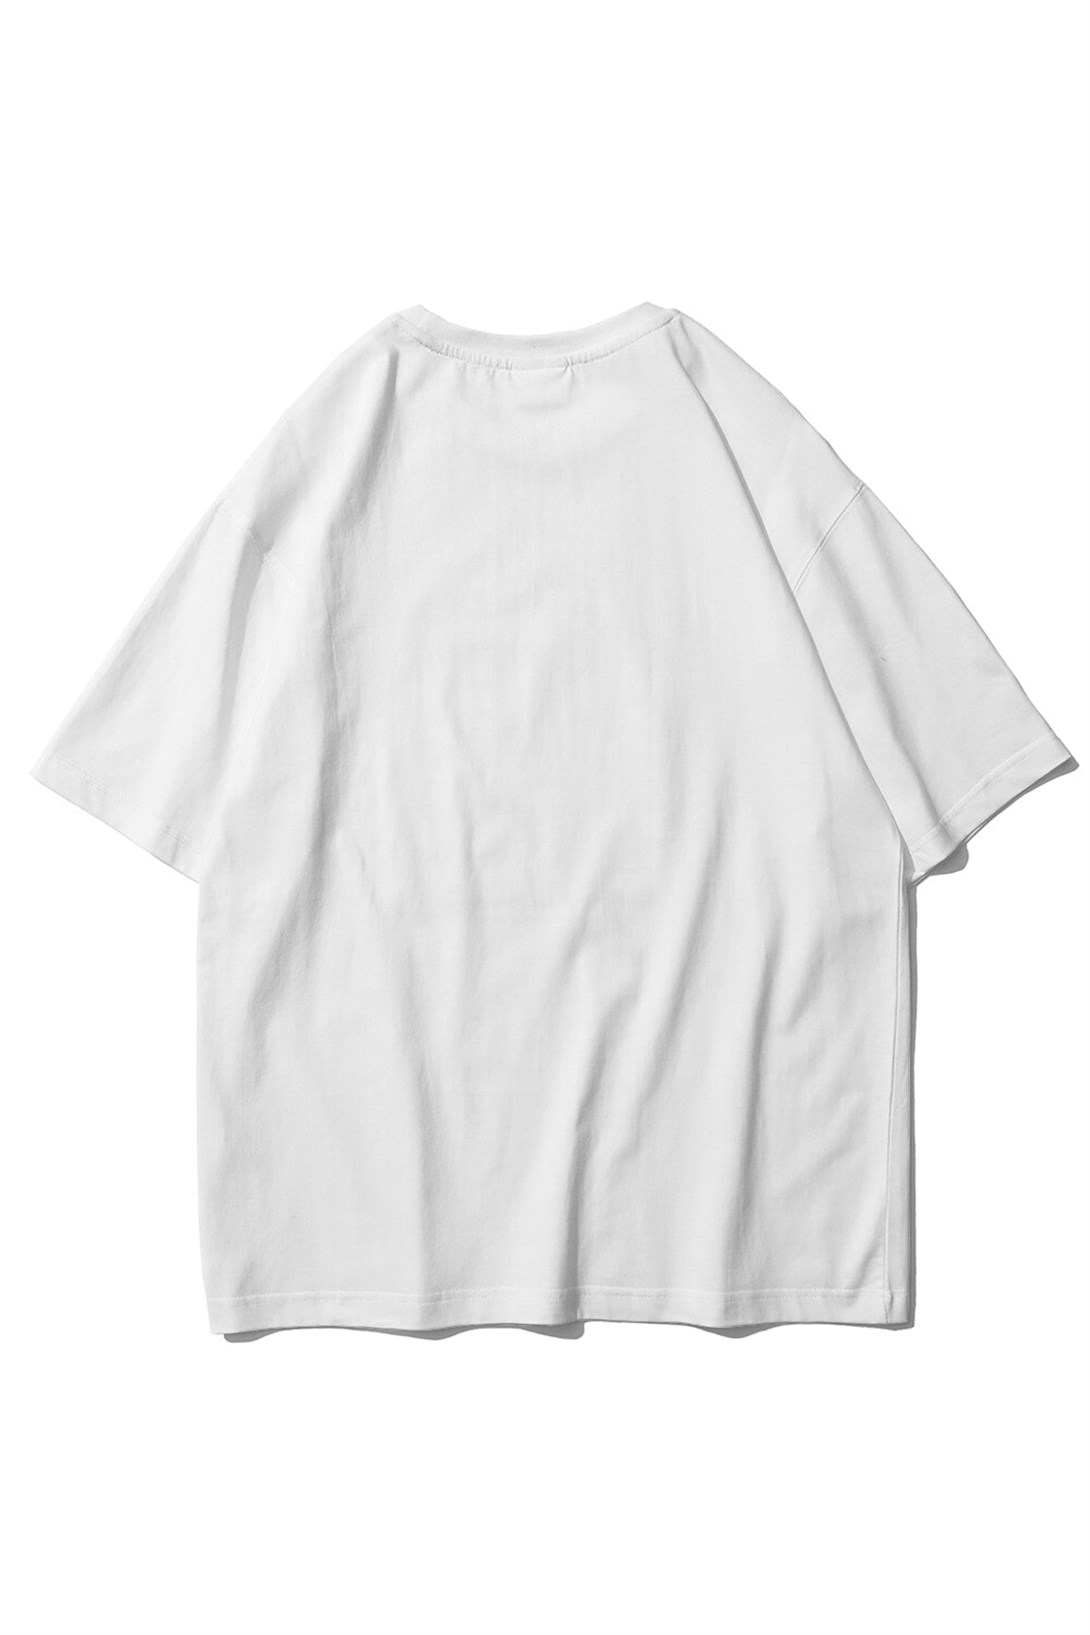 Trendiz Unisex Psycho Beyaz Tshirt